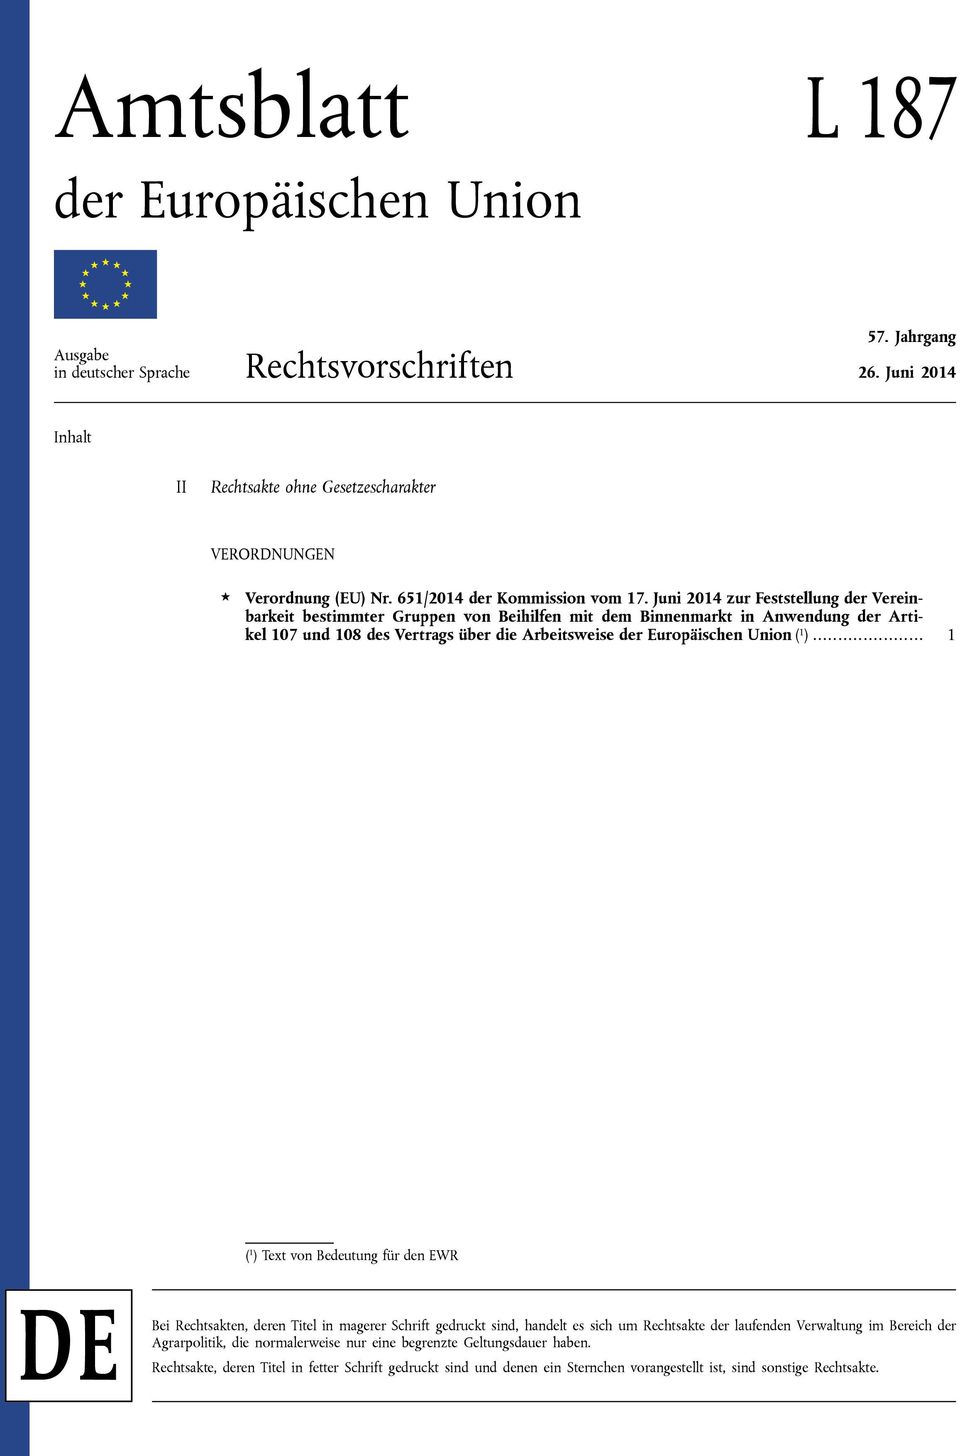 Juni 2014 zur Feststellung der Vereinbarkeit bestimmter Gruppen von Beihilfen mit dem Binnenmarkt in Anwendung der Artikel 107 und 108 des Vertrags über die Arbeitsweise der Europäischen Union ( 1 ).